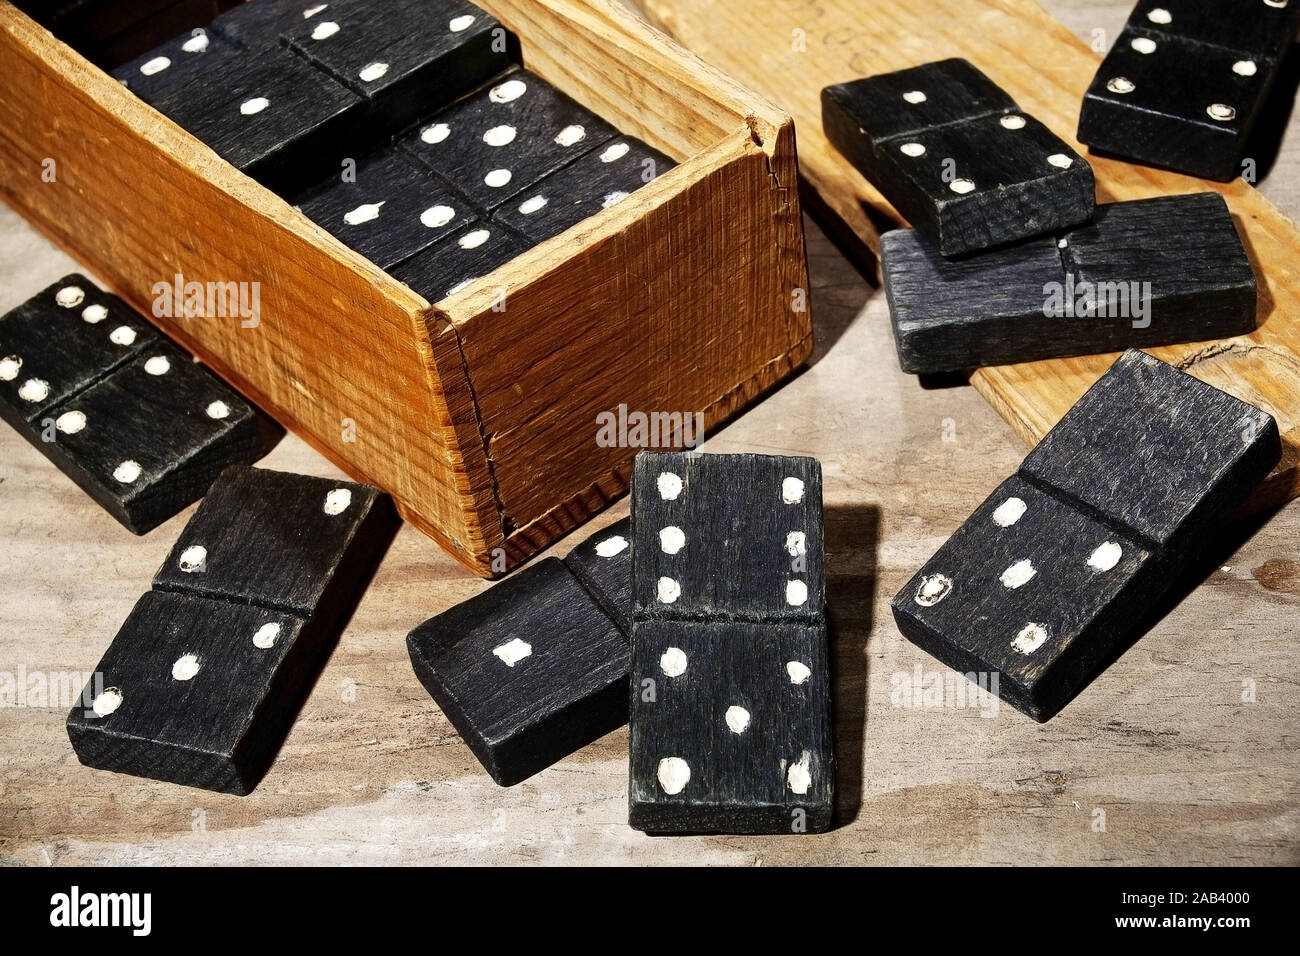 Alte Dominosteine aus Holz mit einem Kasten |Old wooden dominoes with a box| Stock Photo